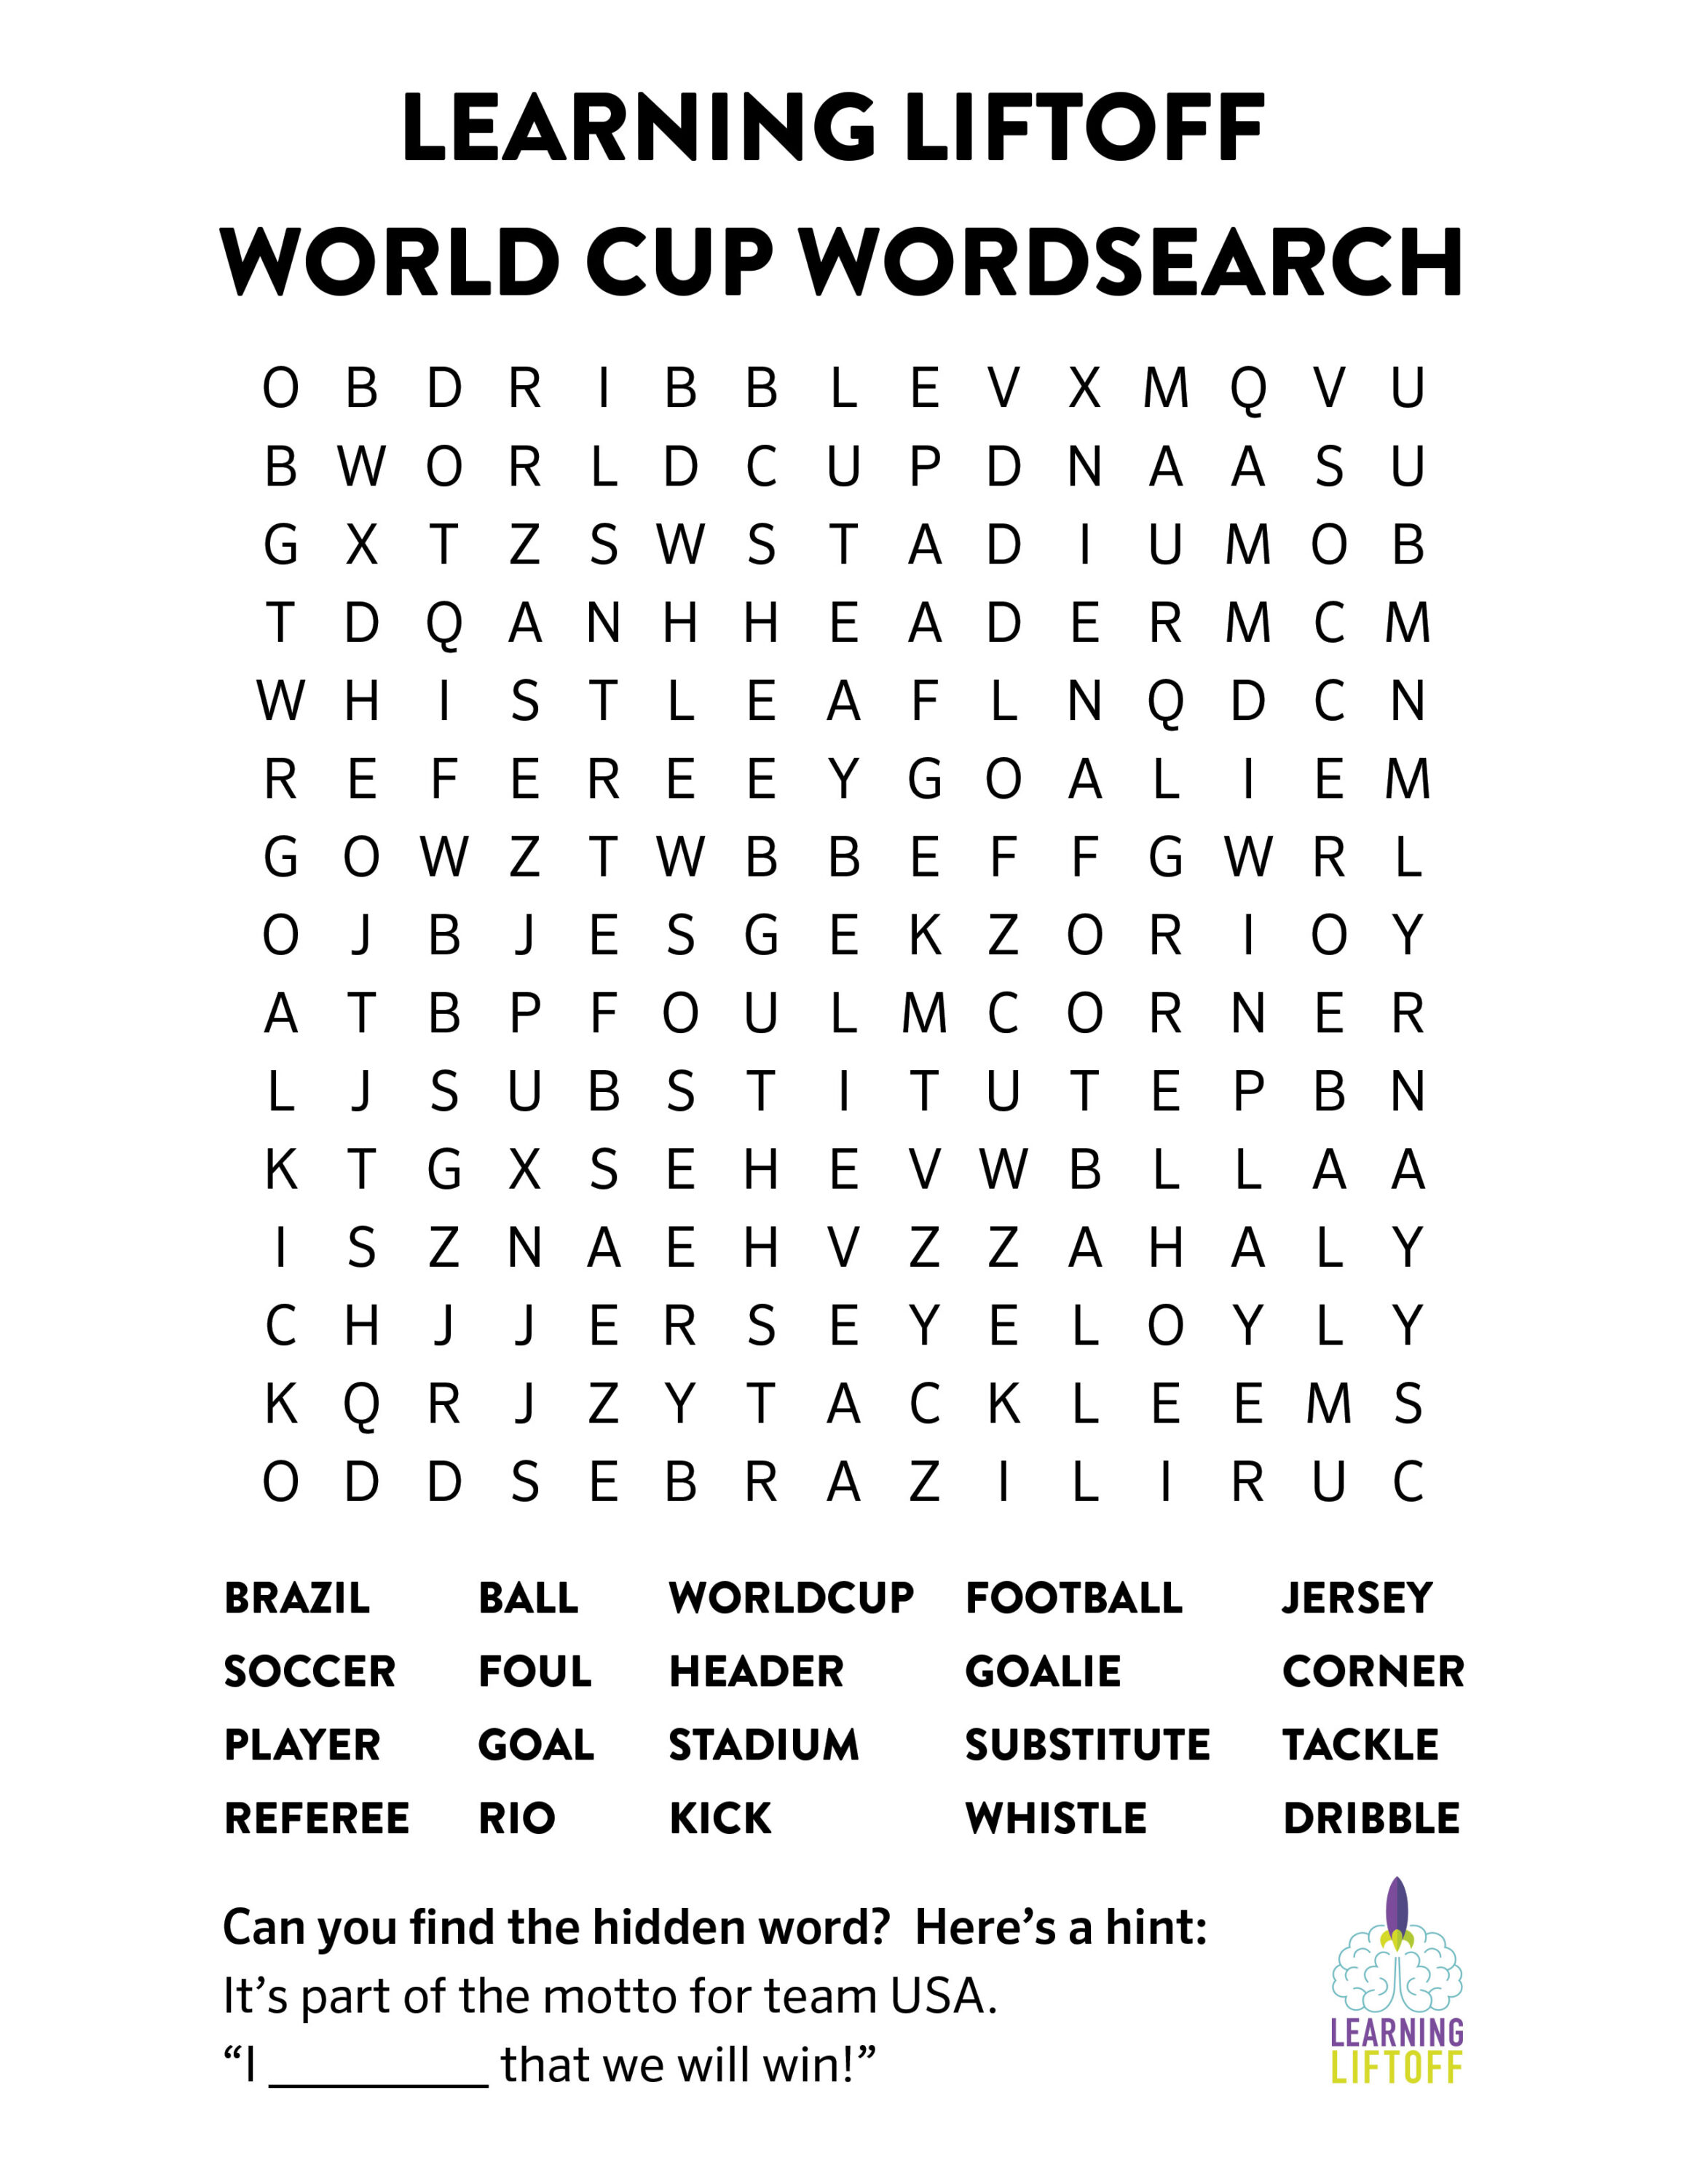 SoccerWordSearch